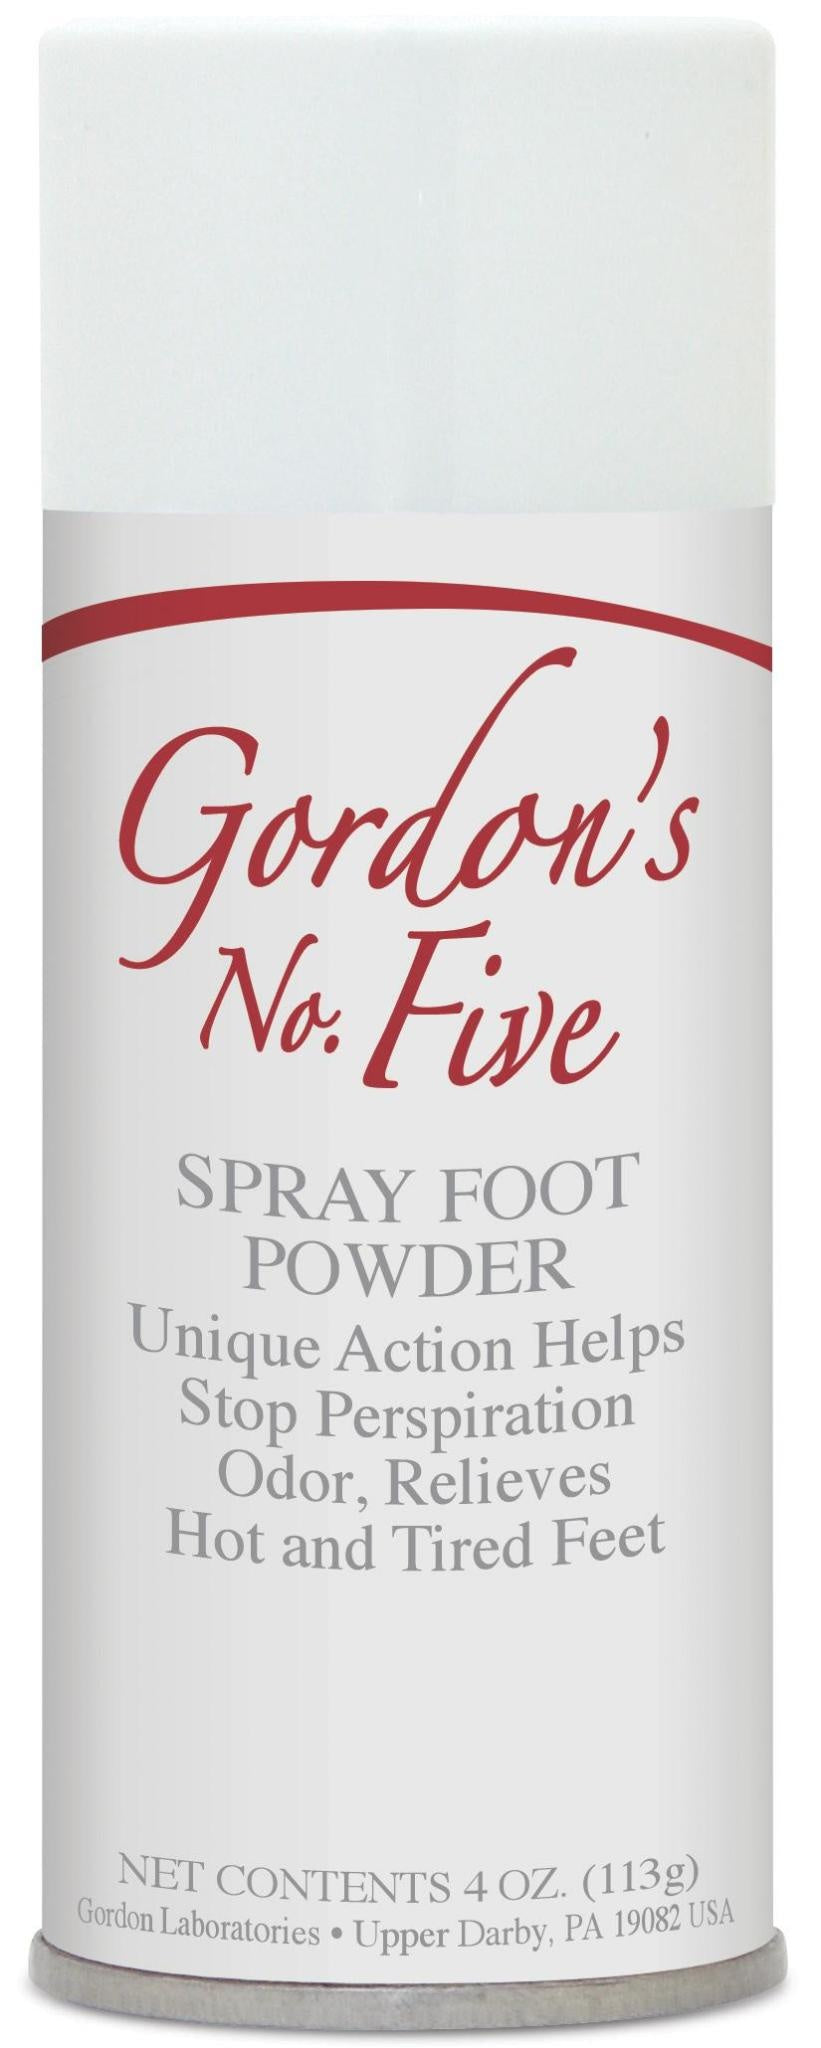 No. 5 Spray Spray Foot Powder